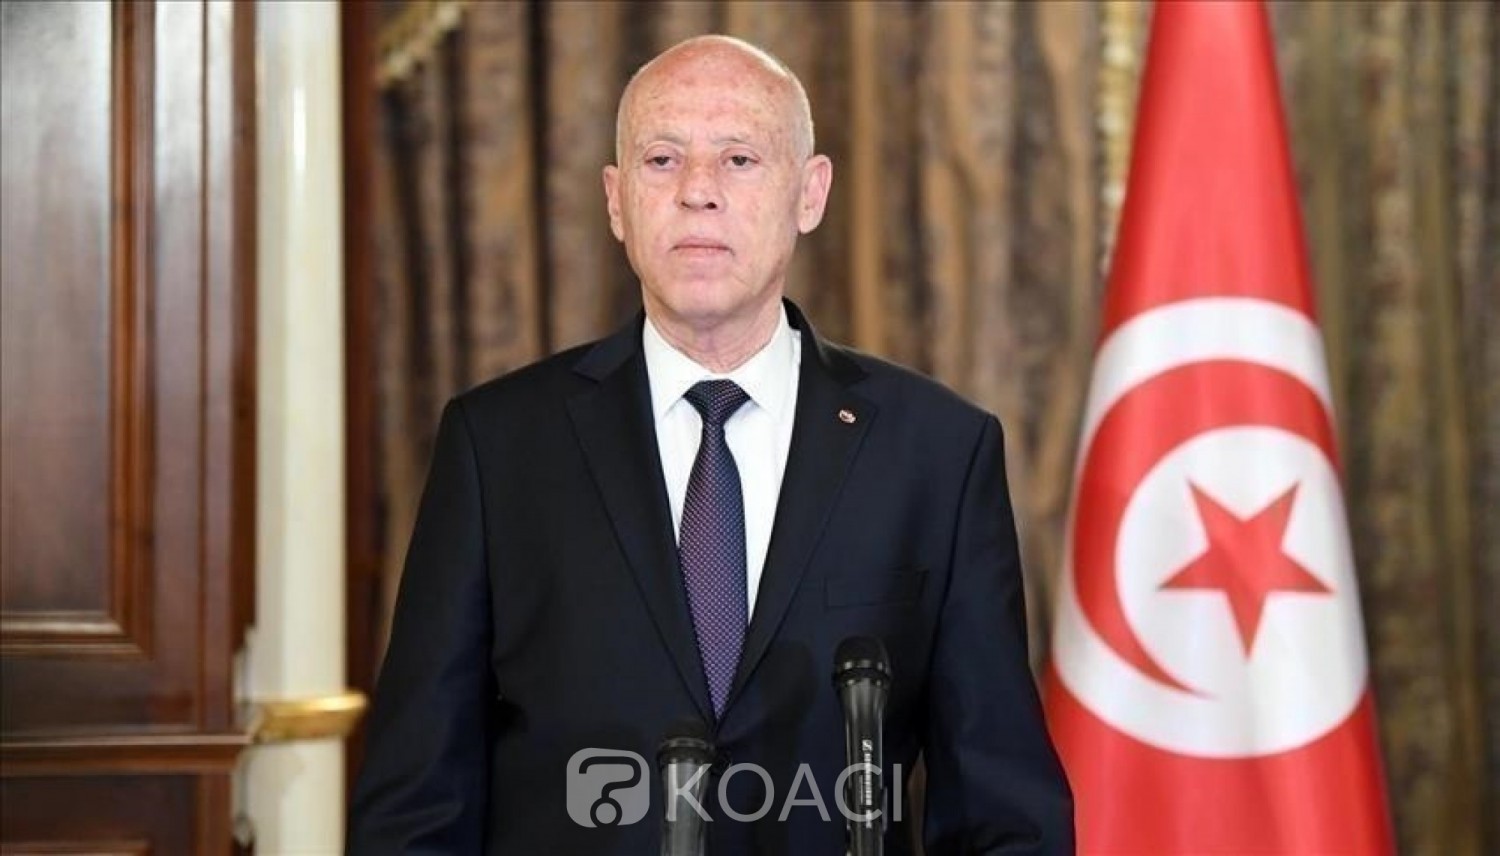 Tunisie : Kaïs Saïed limoge son Premier ministre et suspend le parlement, Ennahdha dénonce un «coup d'Etat »